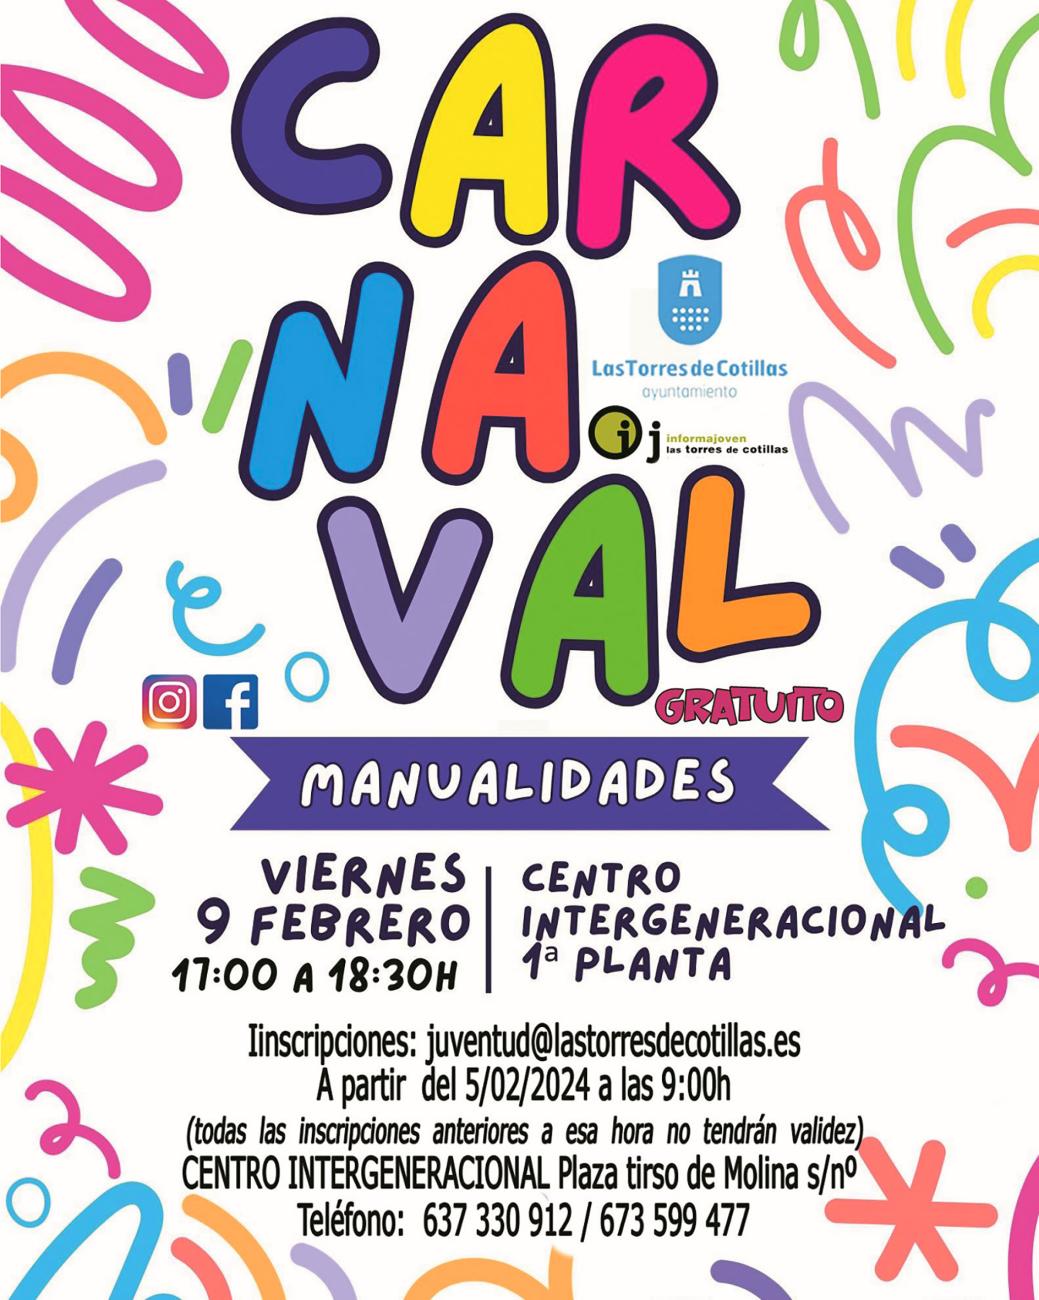 La Concejalía de Juventud propone un taller gratuito de manualidades de Carnaval